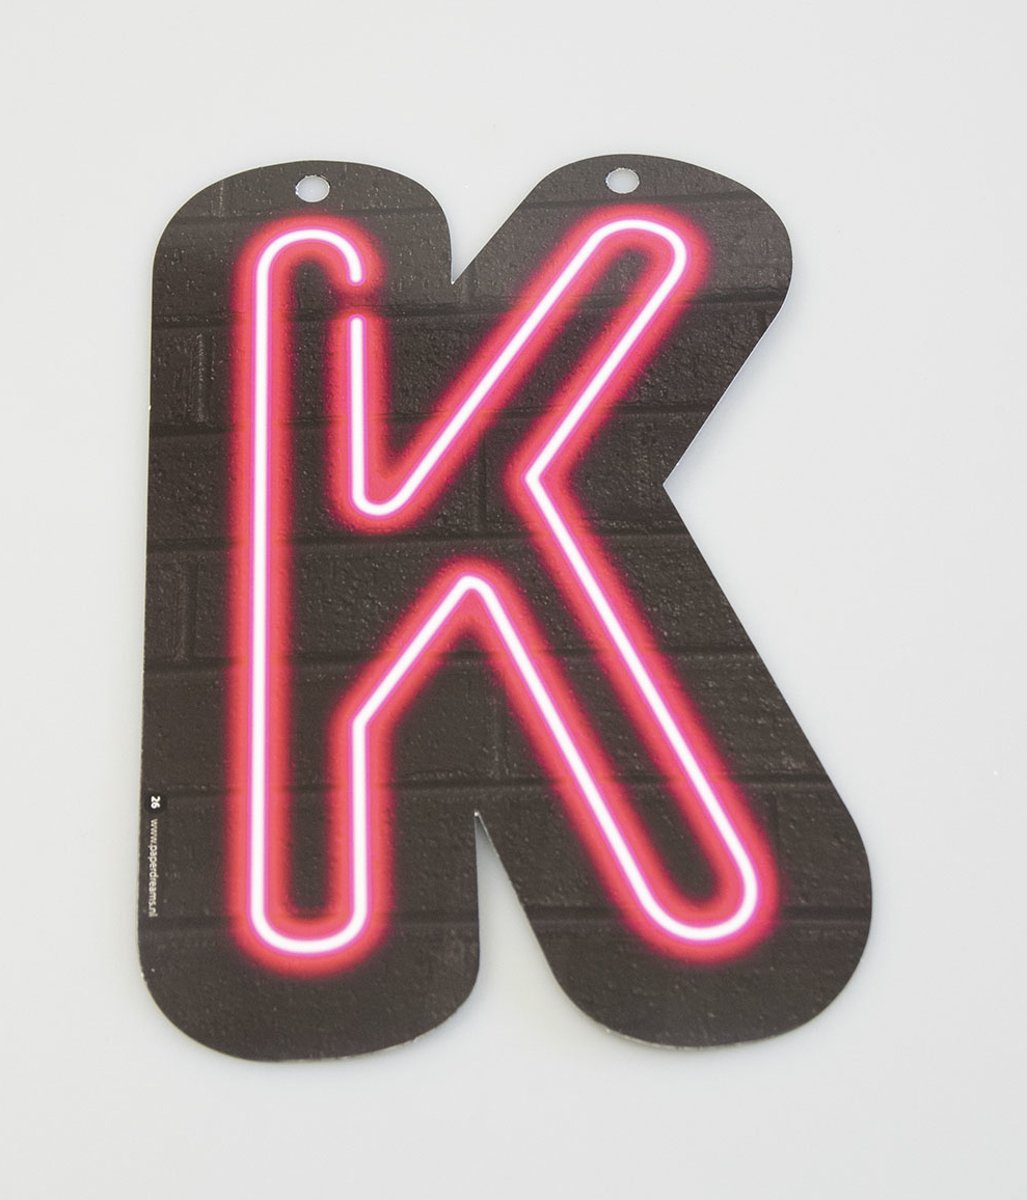 Neon letter - K